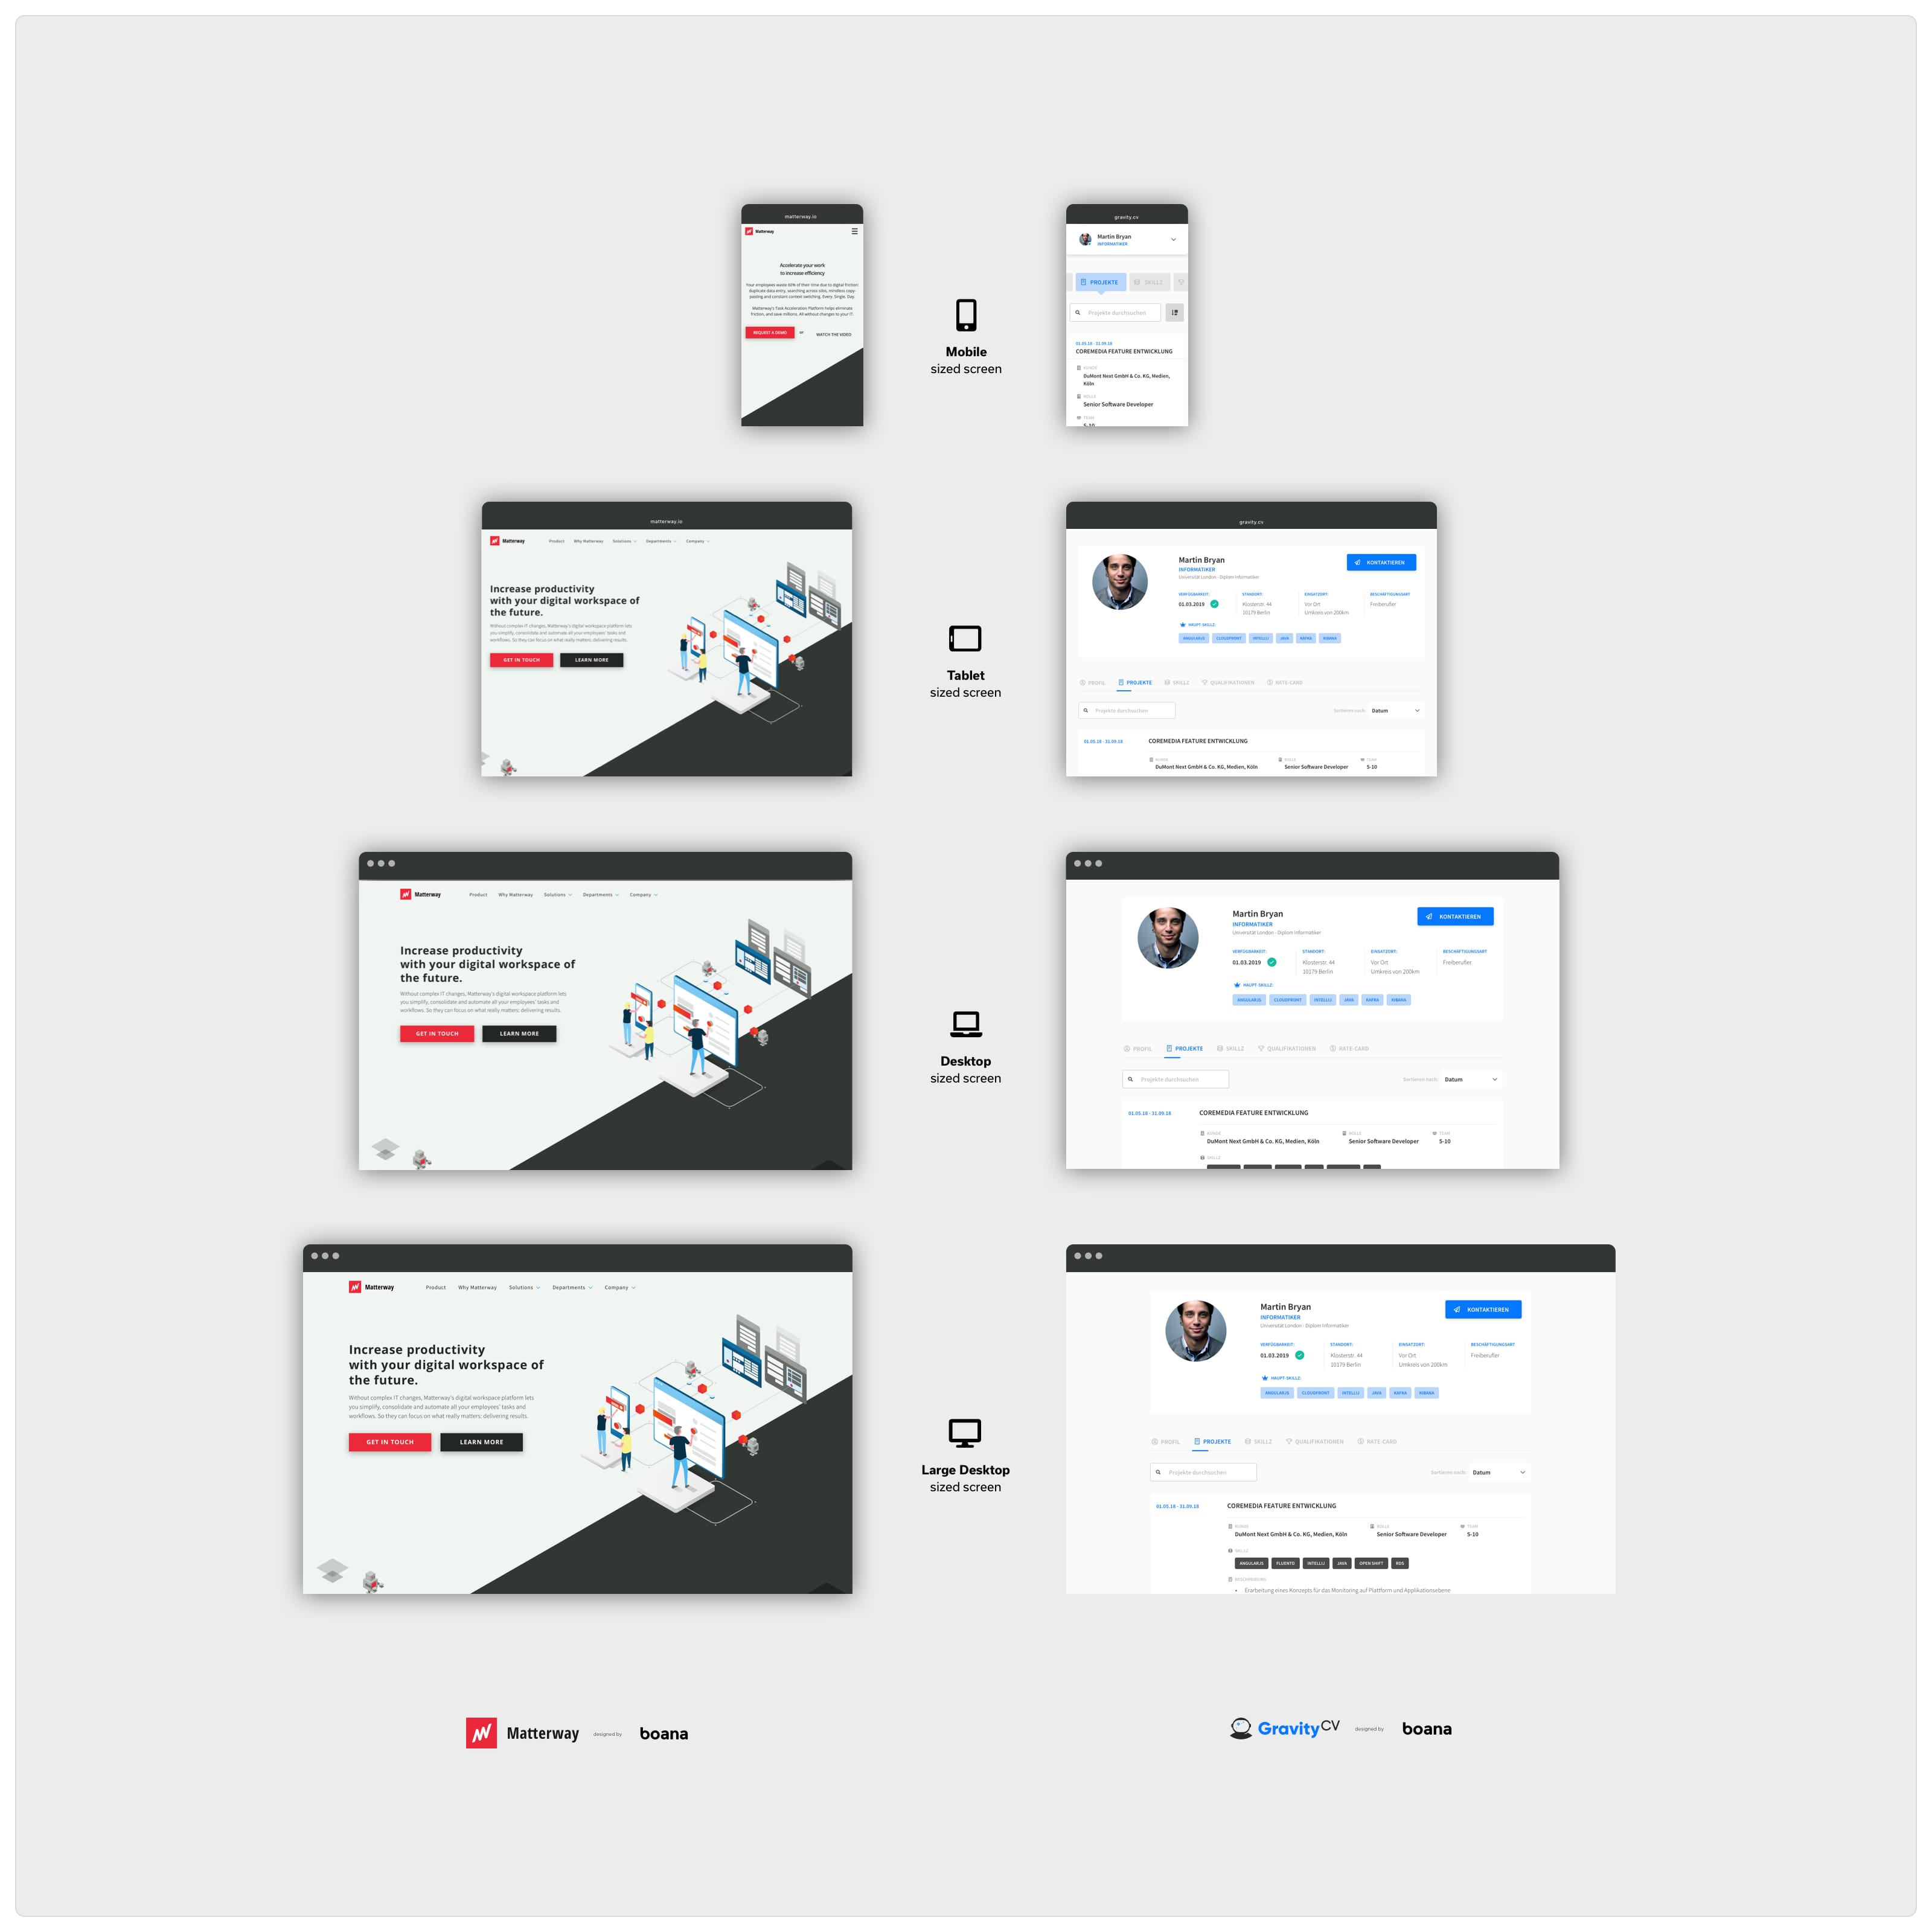 Beispiele für Responsive Design einer Landingpage (links) und eines digitalen Produkts (rechts).